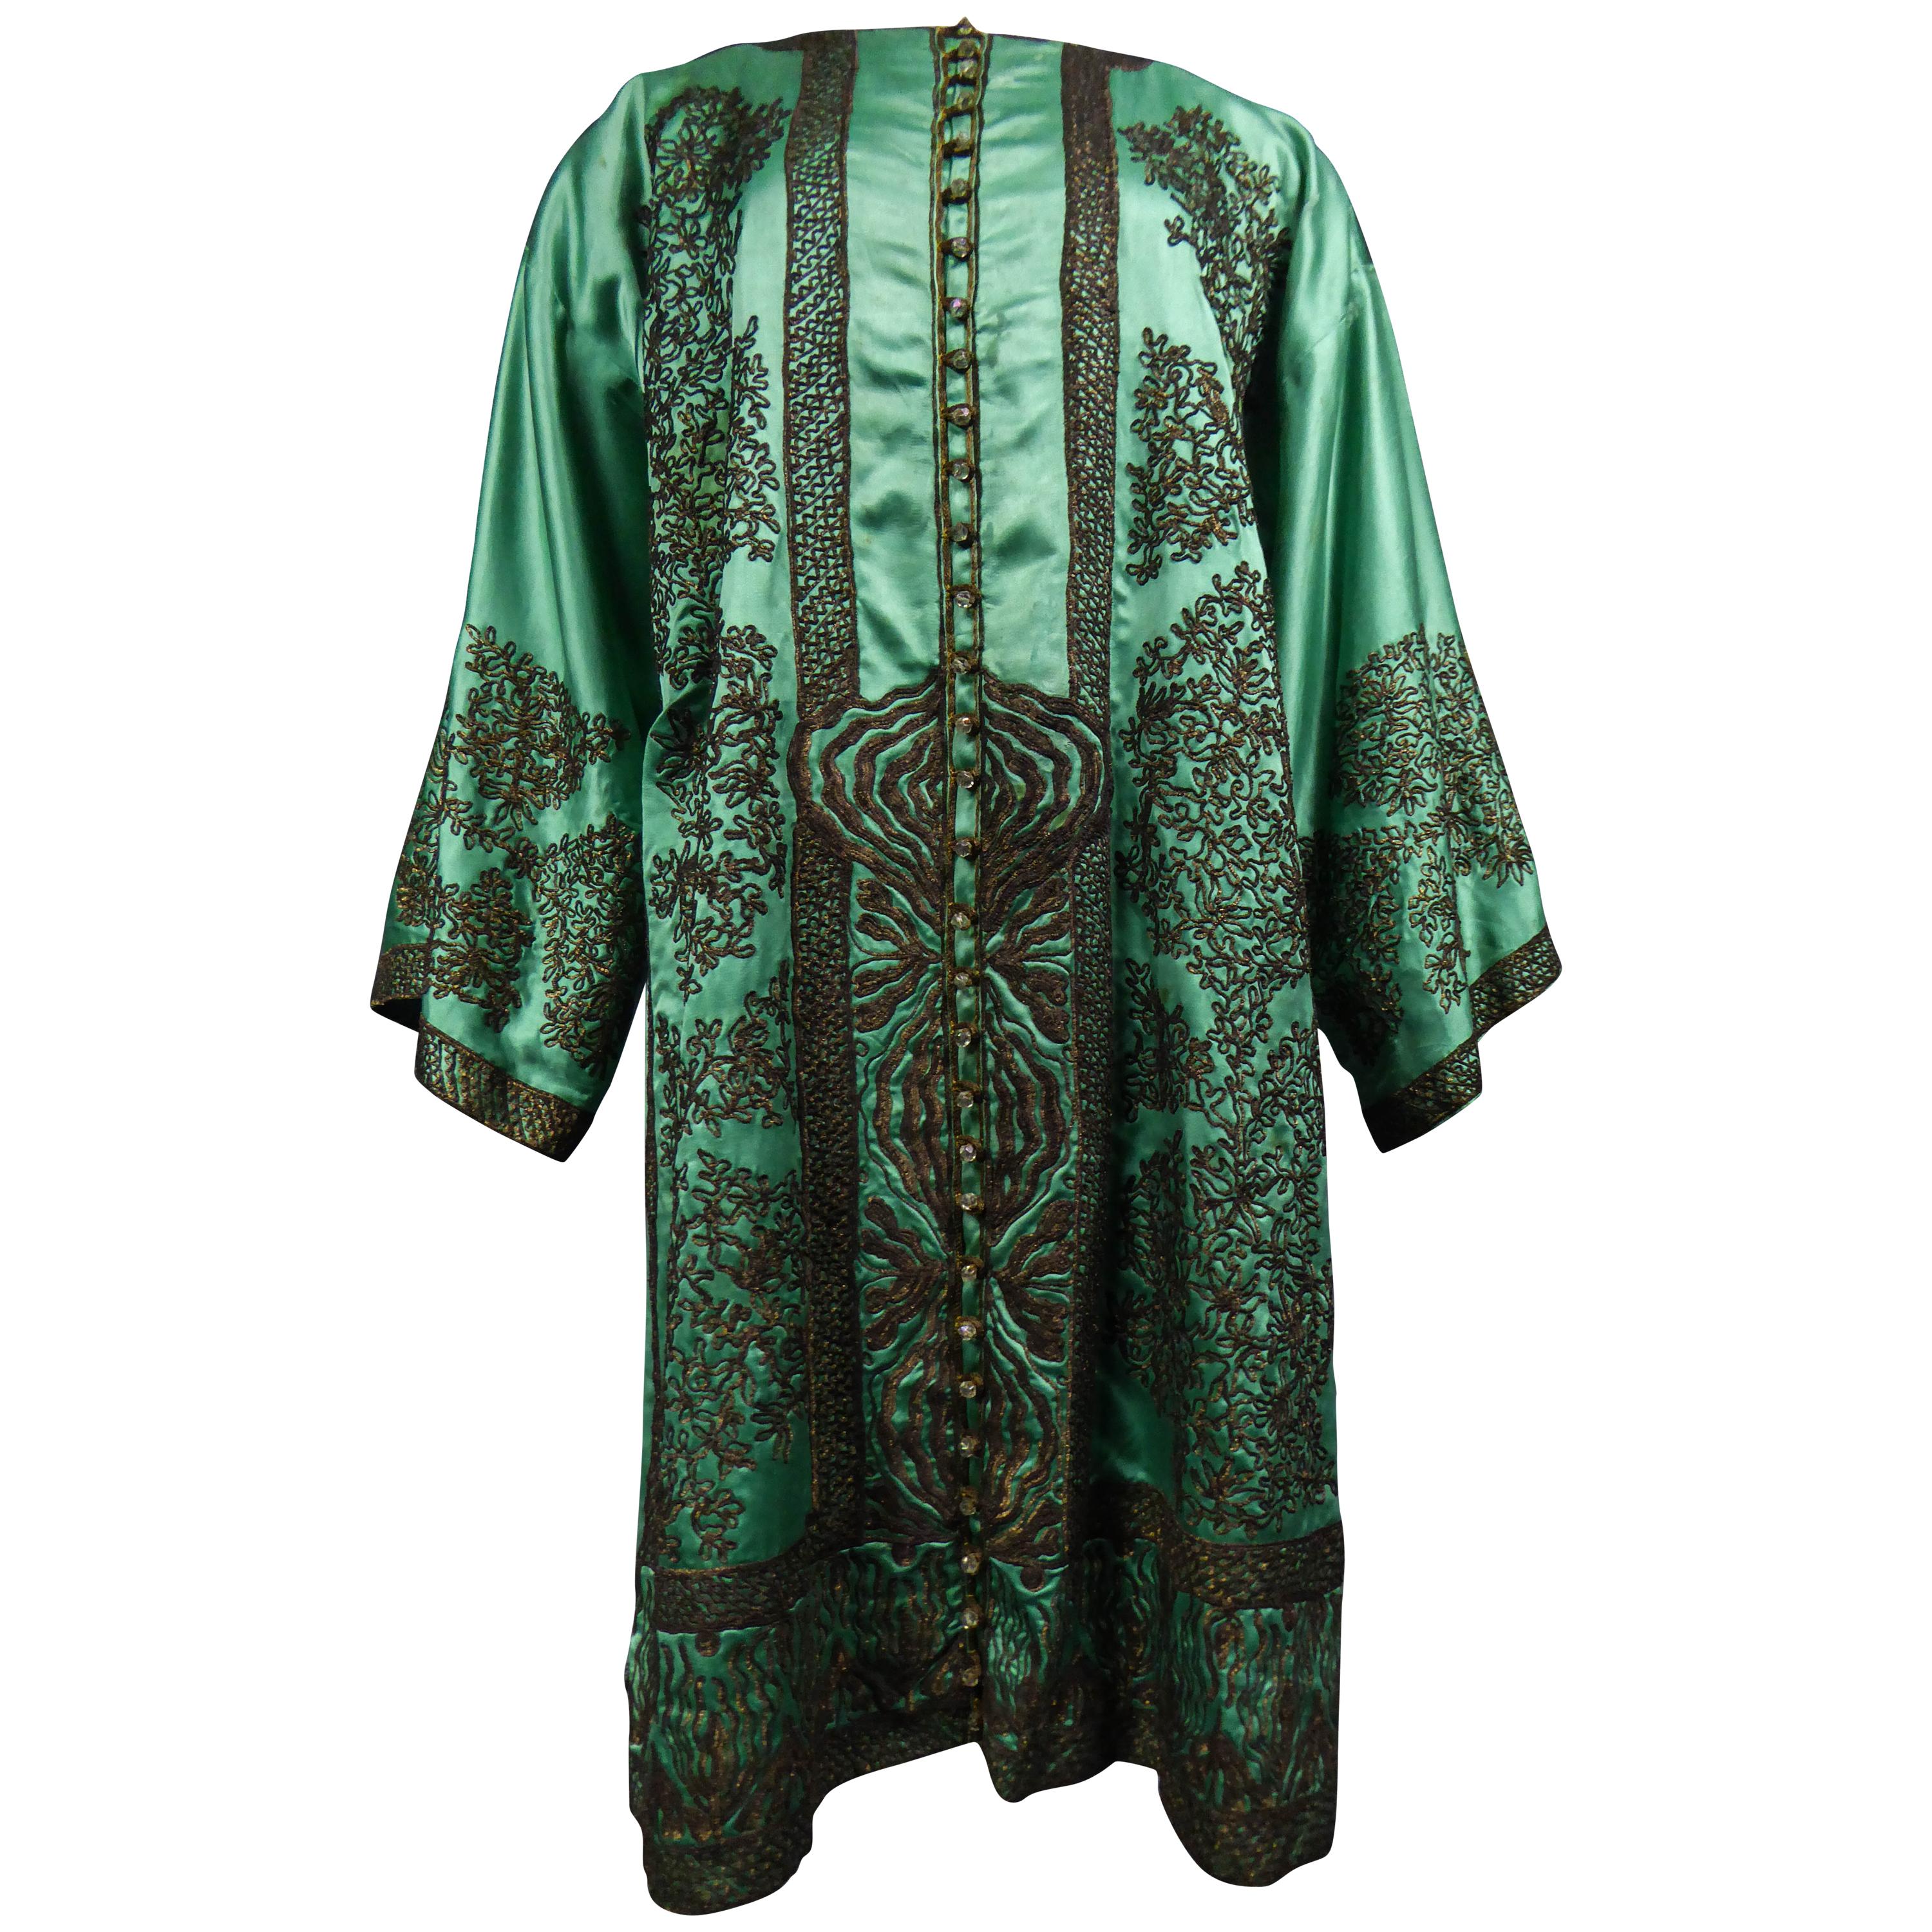 Babani Couture Kaftan or Party Kimono in green satin with appliqué, circa 1915